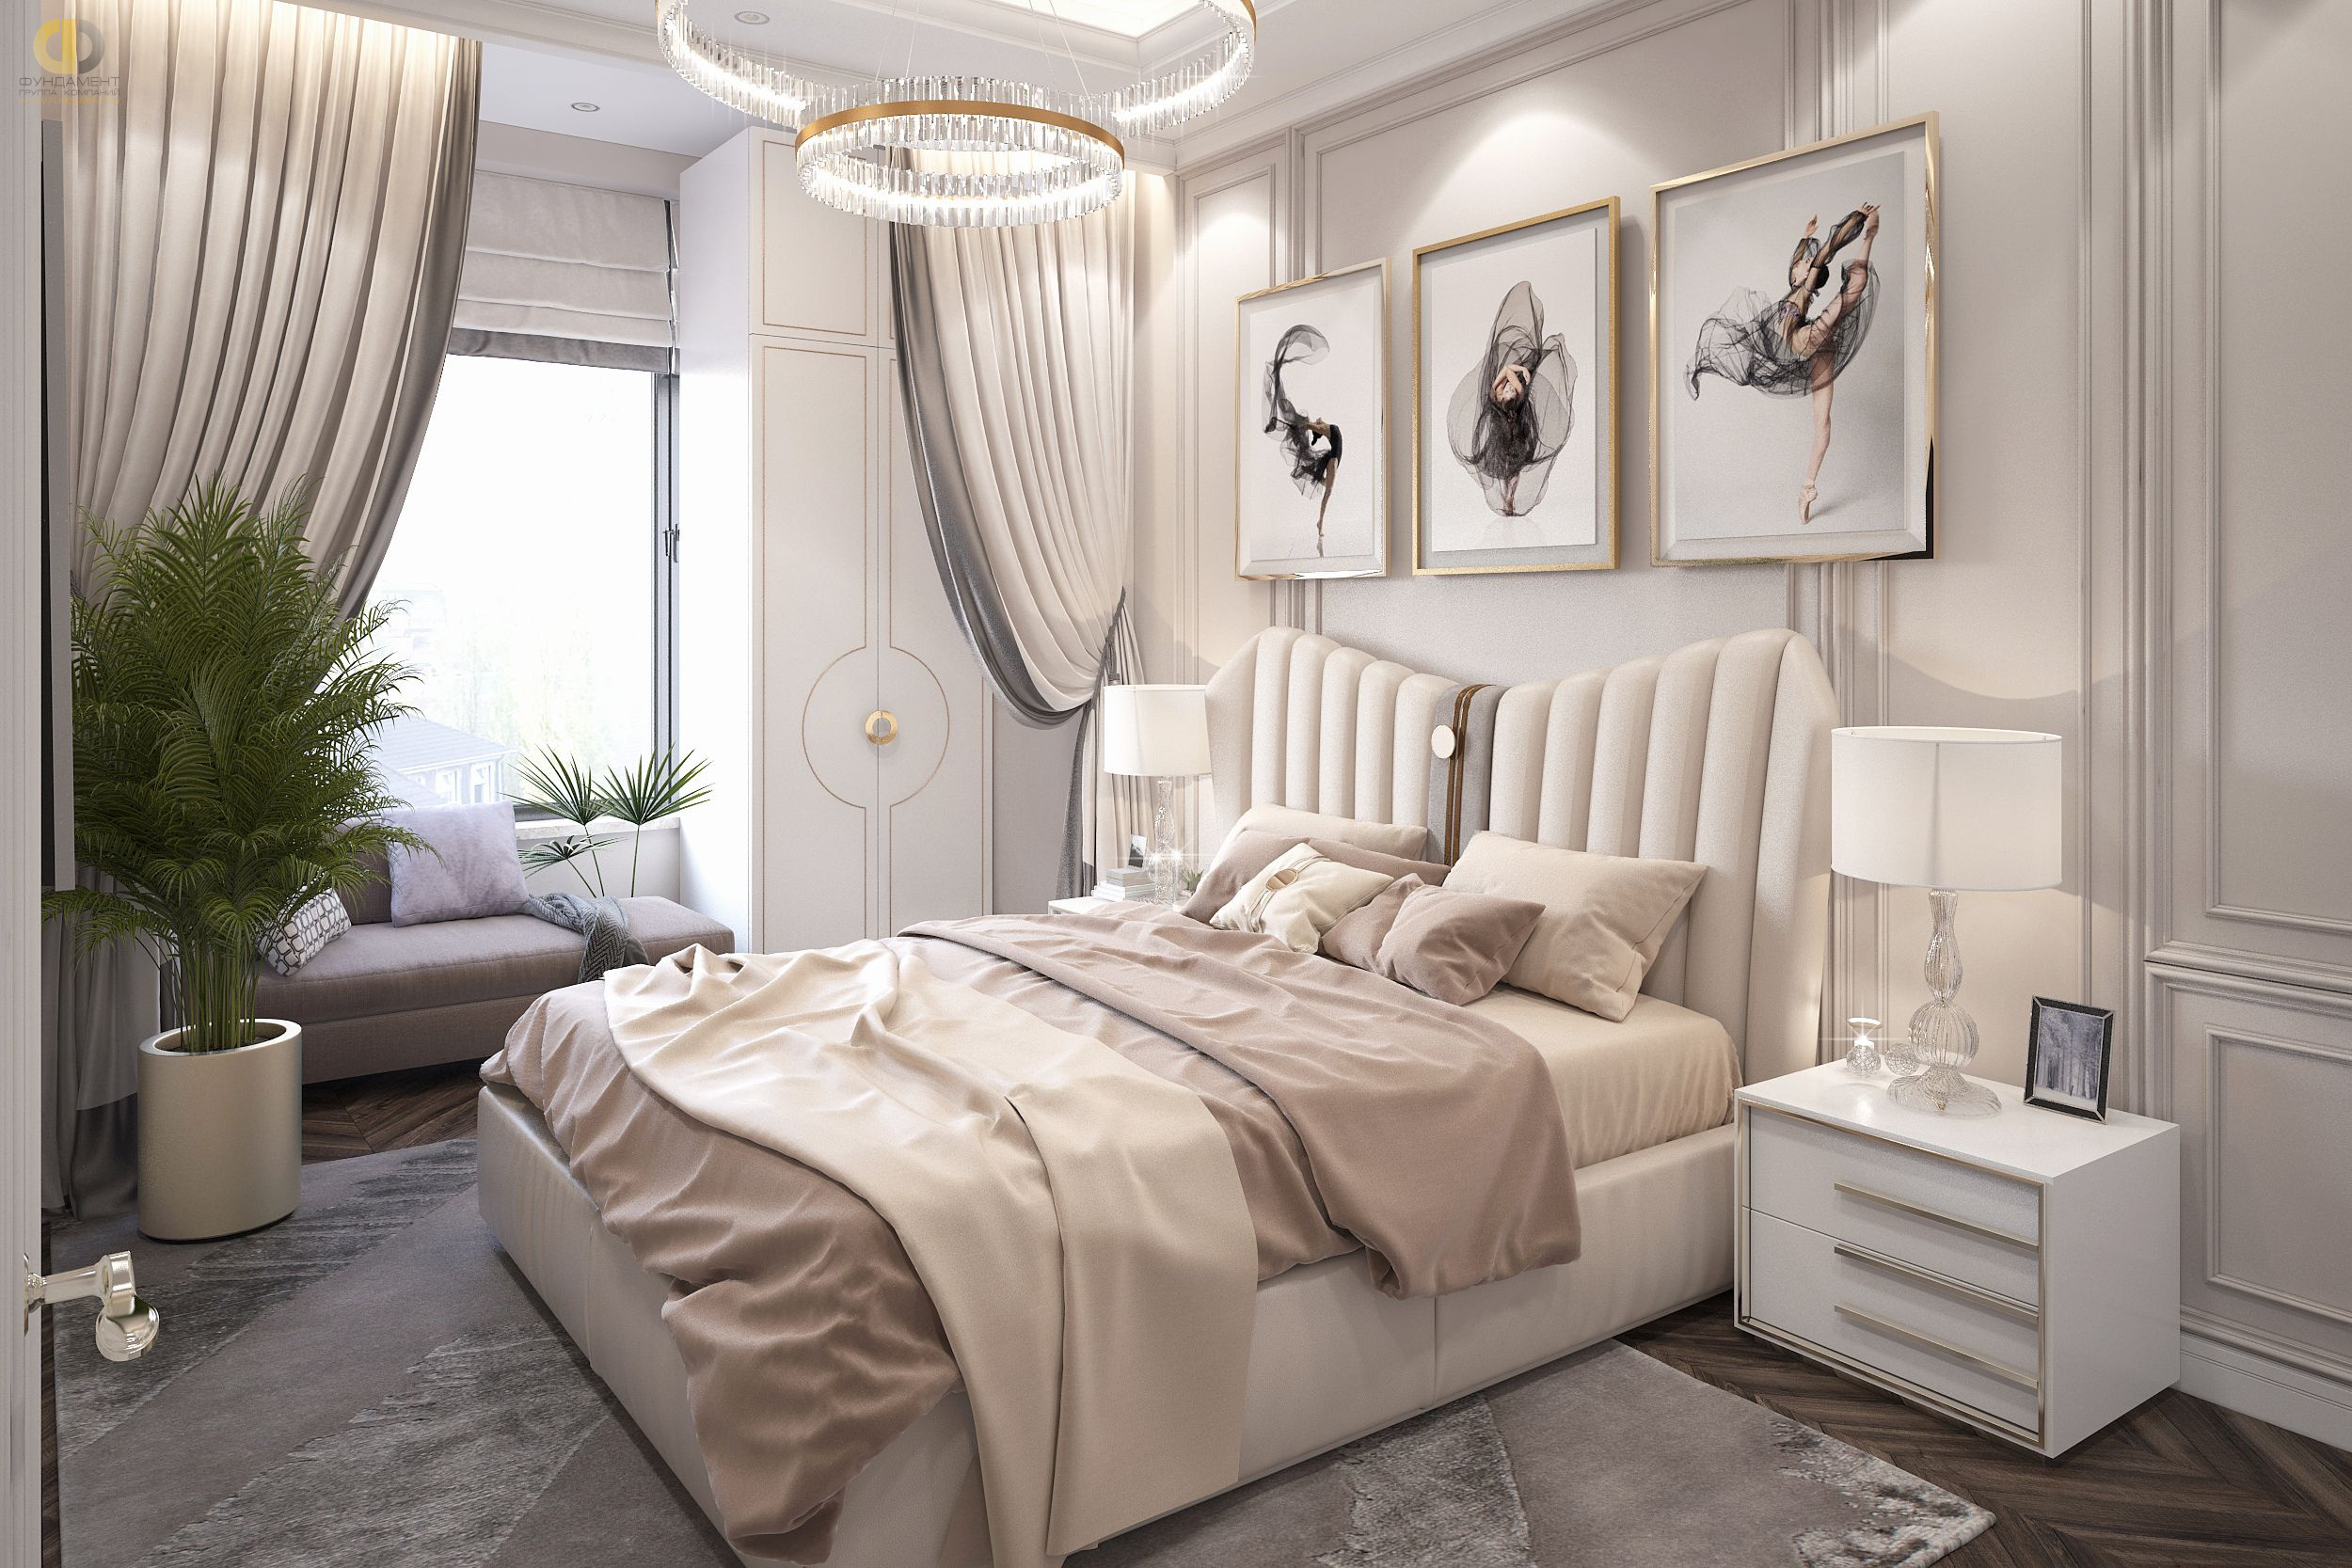 Спальня в стиле дизайна арт-деко (ар-деко) по адресу г. Москва, проезд Невельского, дом 3к1, 2021 года